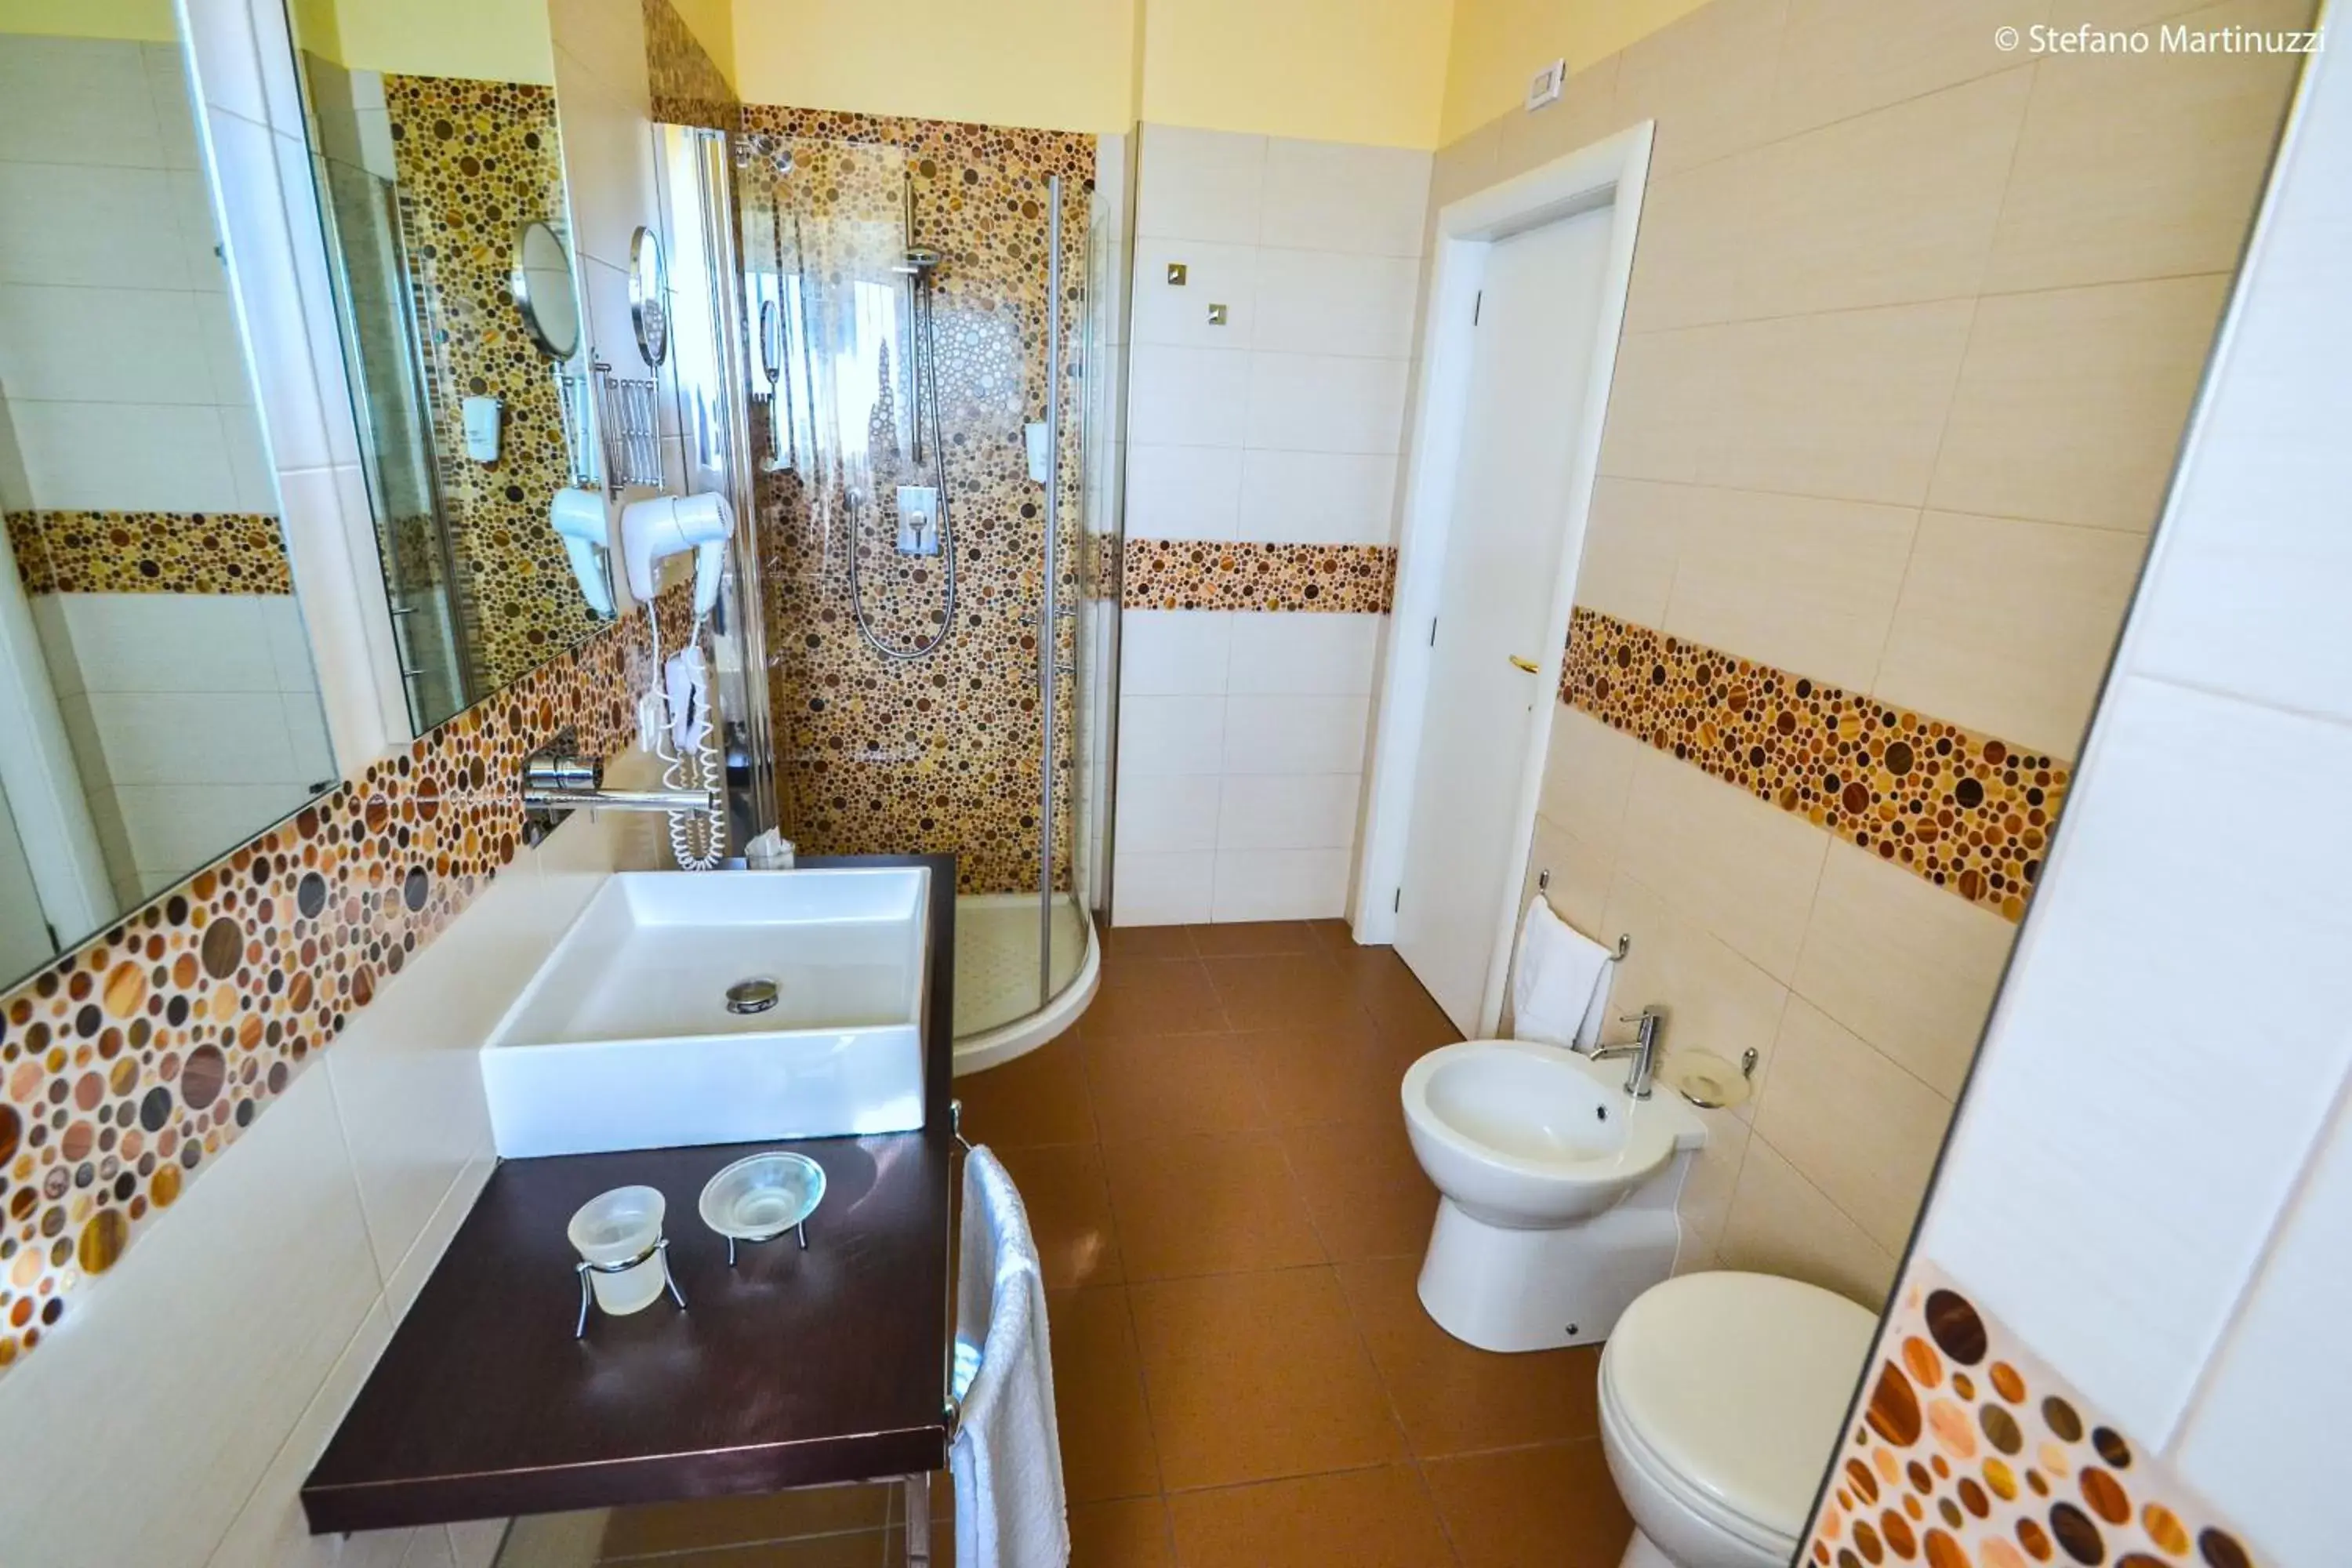 Bathroom in Hotel Corsignano